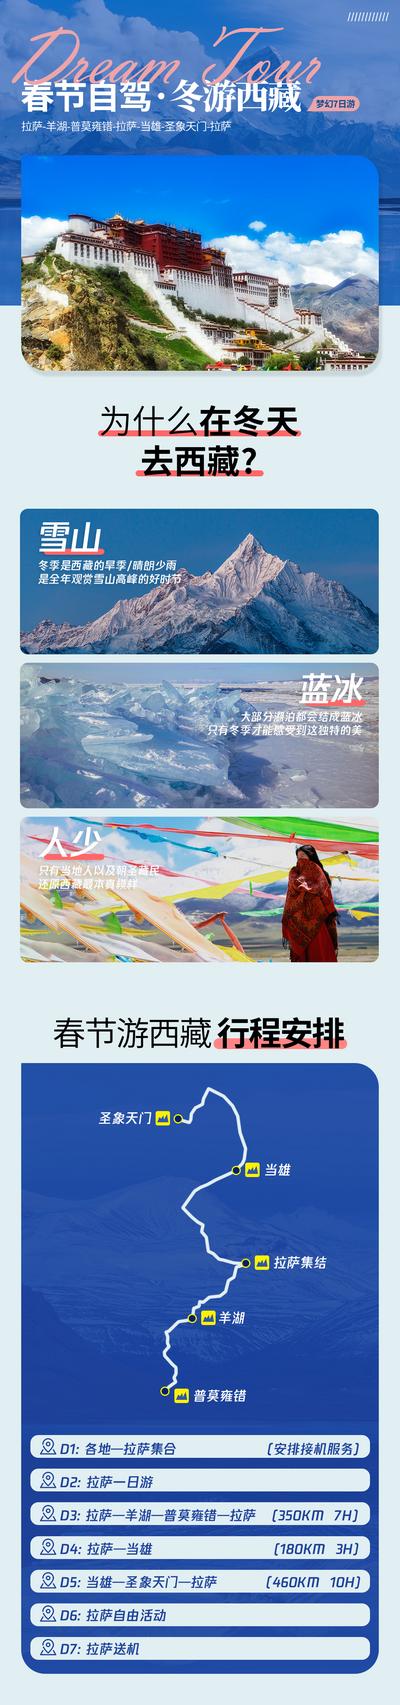 南门网 海报 长图 旅游 西藏 川藏 旅游 线路 自驾